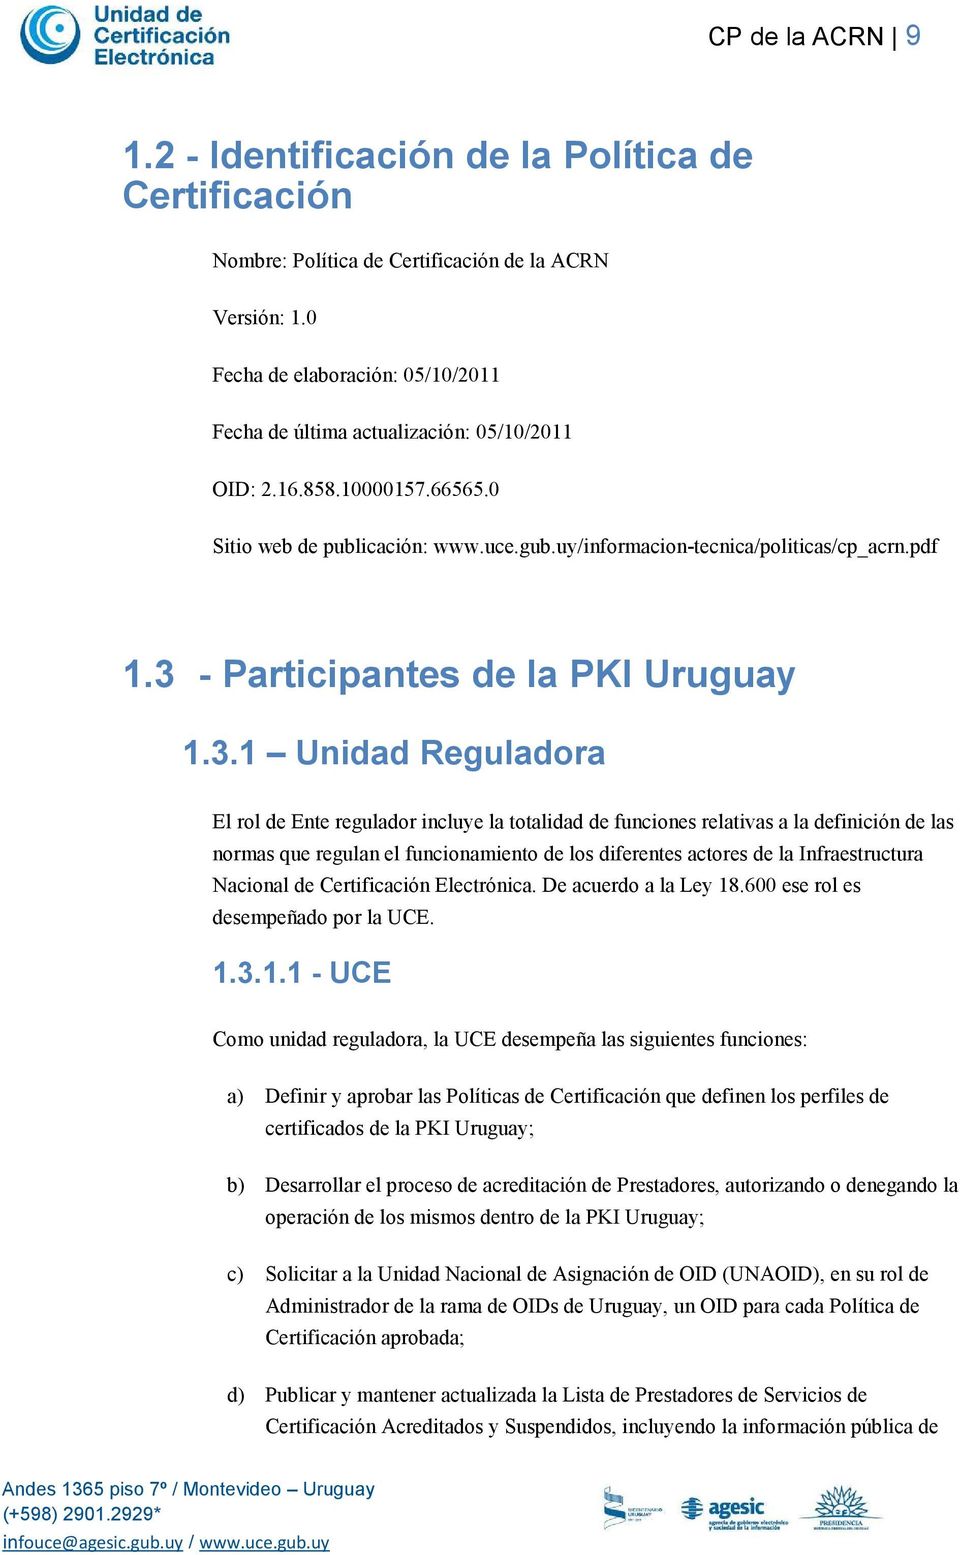 3 - Participantes de la PKI Uruguay 1.3.1 Unidad Reguladora El rol de Ente regulador incluye la totalidad de funciones relativas a la definición de las normas que regulan el funcionamiento de los